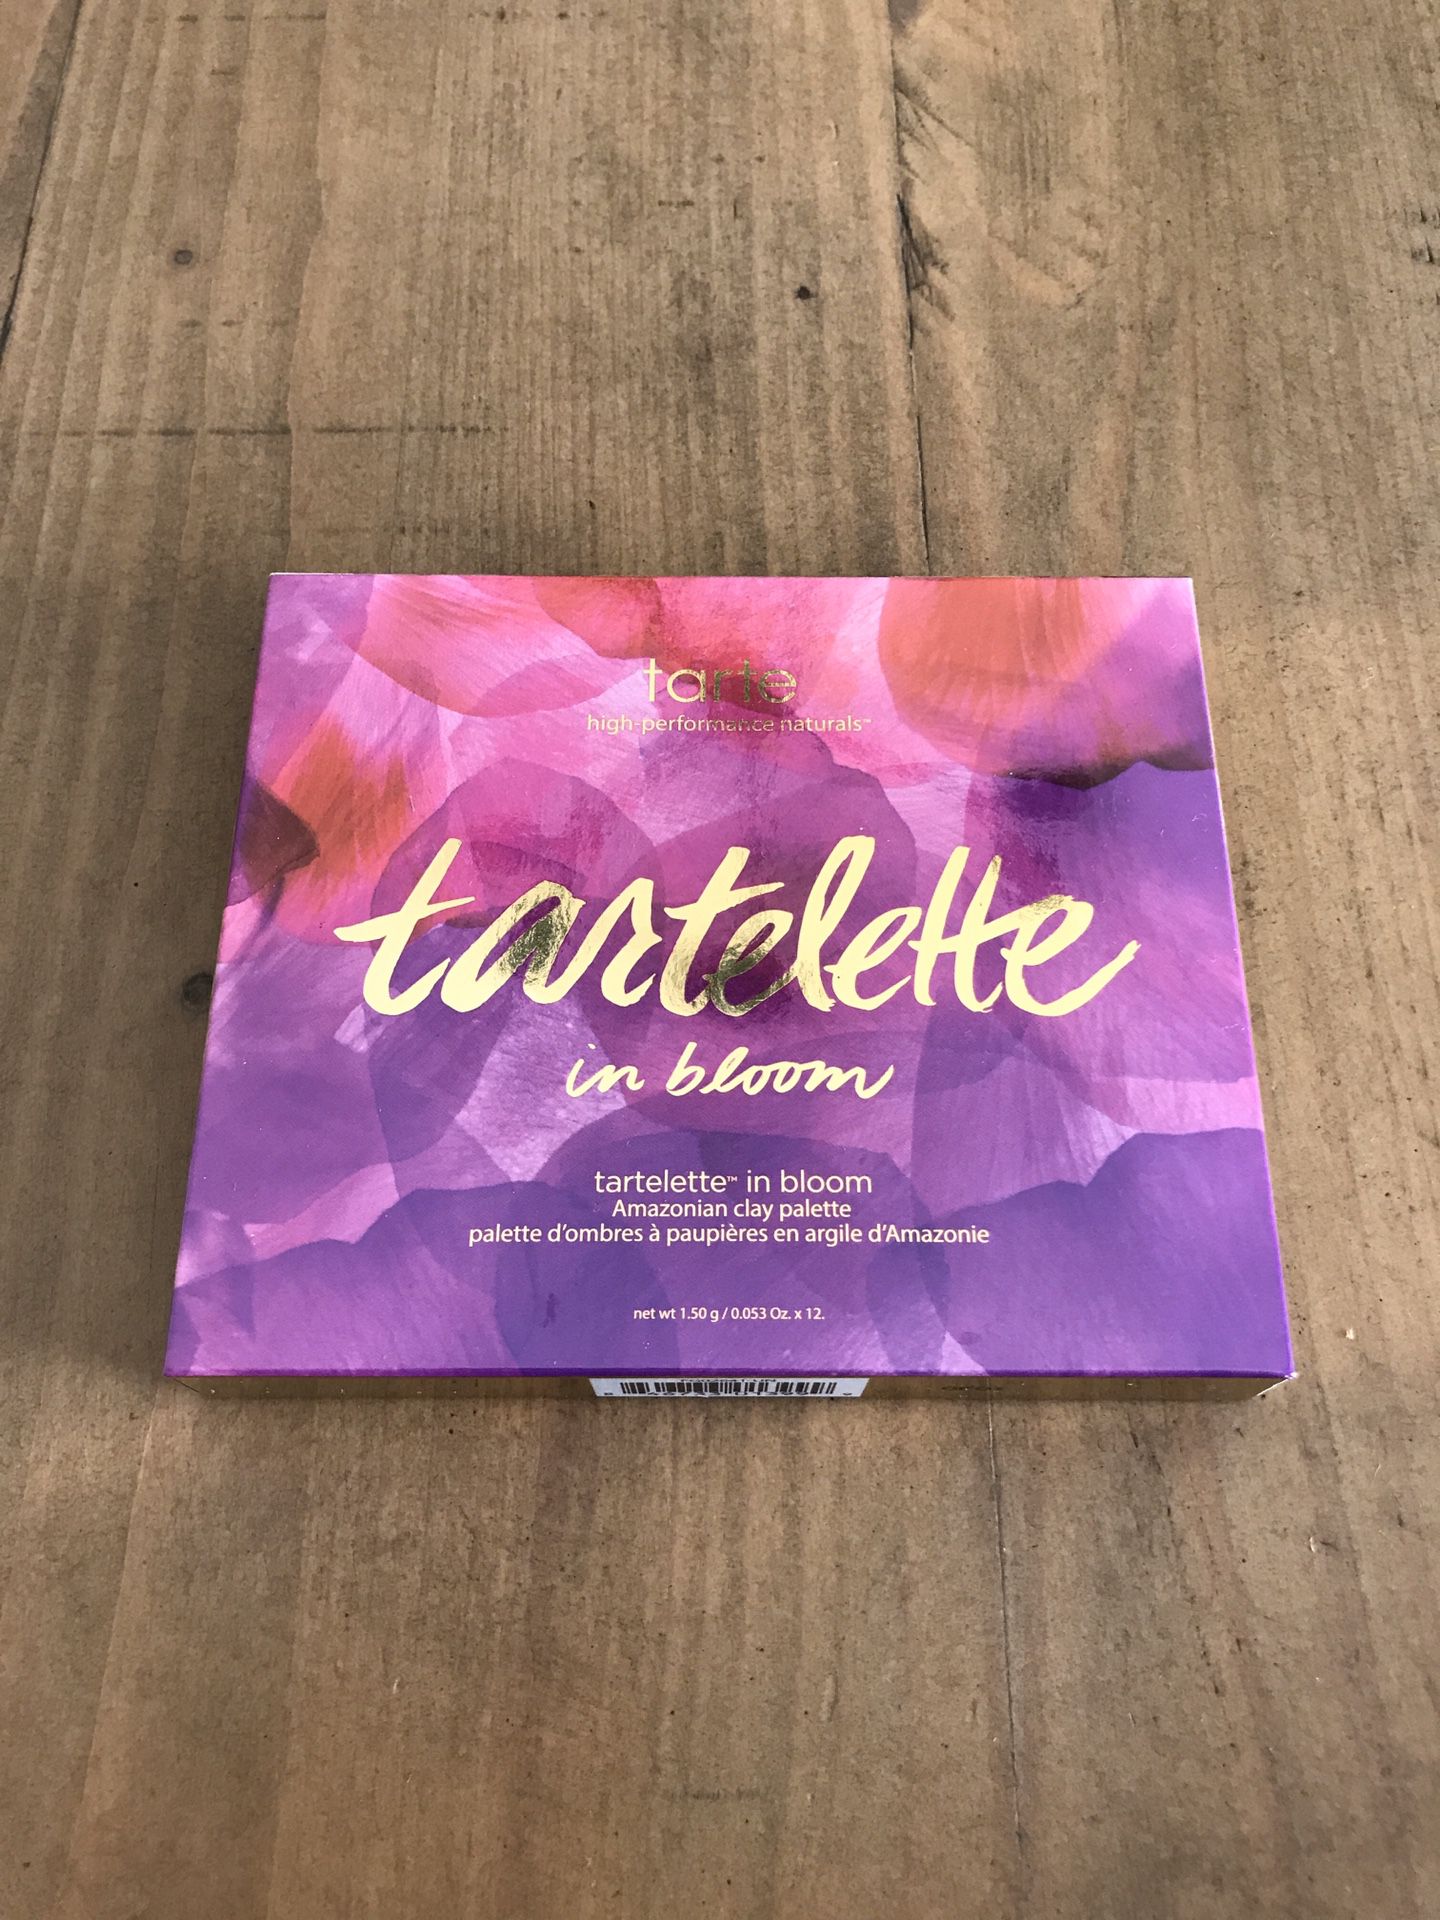 Tarte “Tartelette In Bloom” Eye Shadow Palette